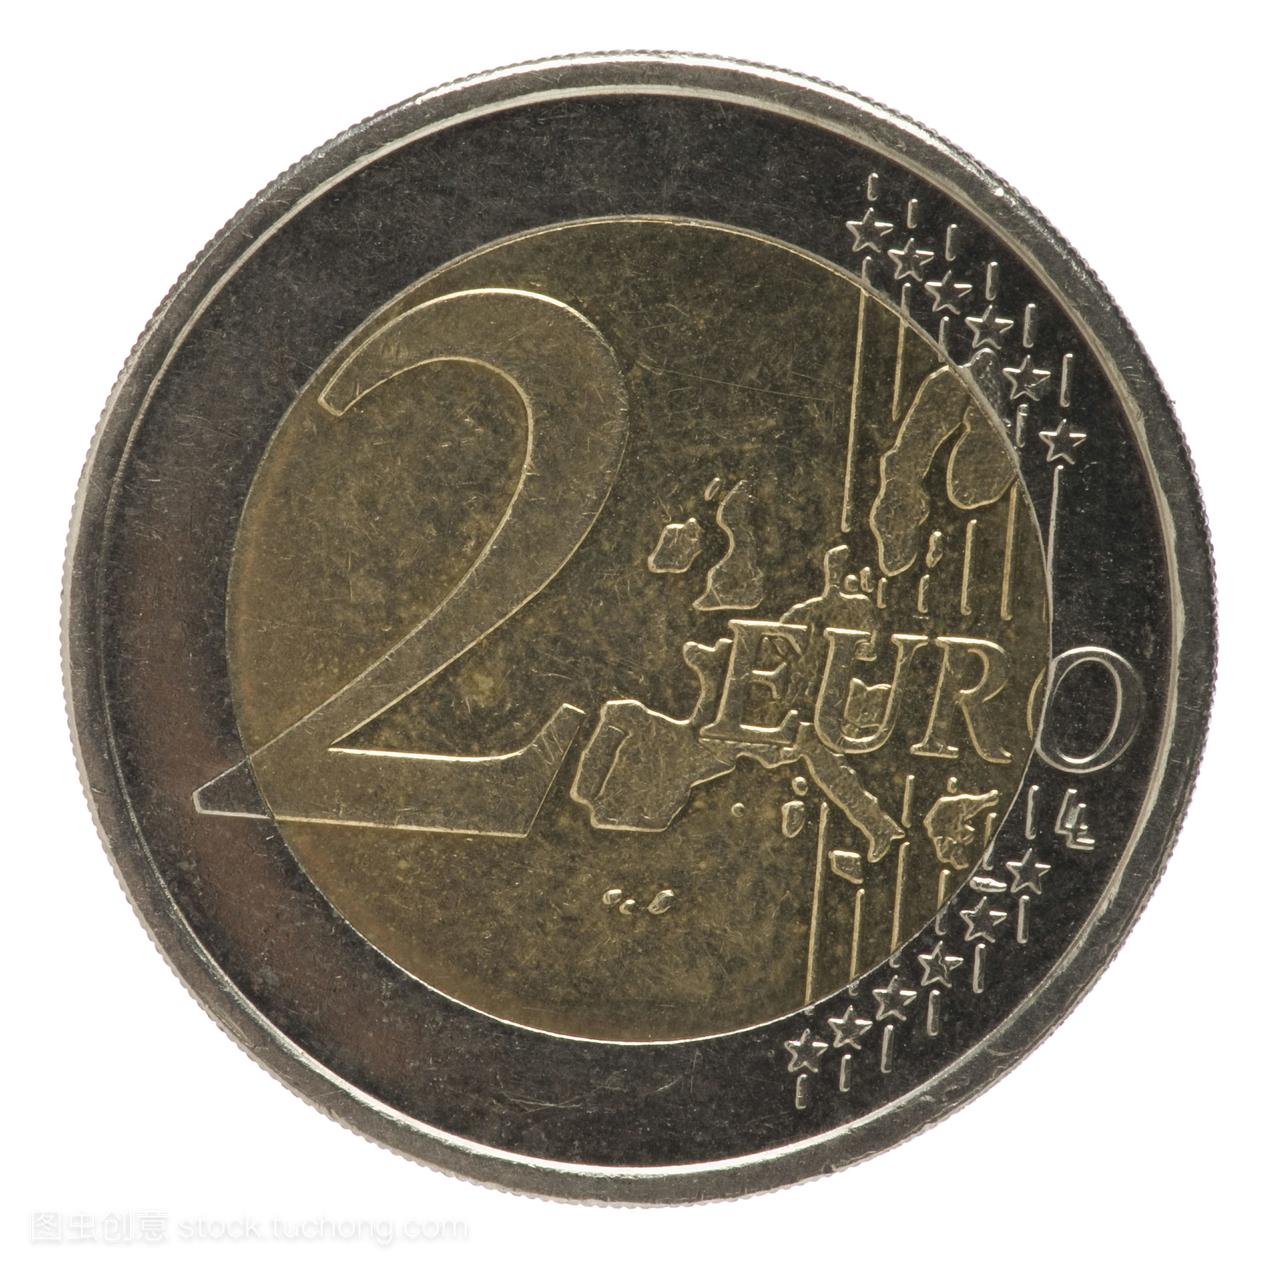 2欧元硬币